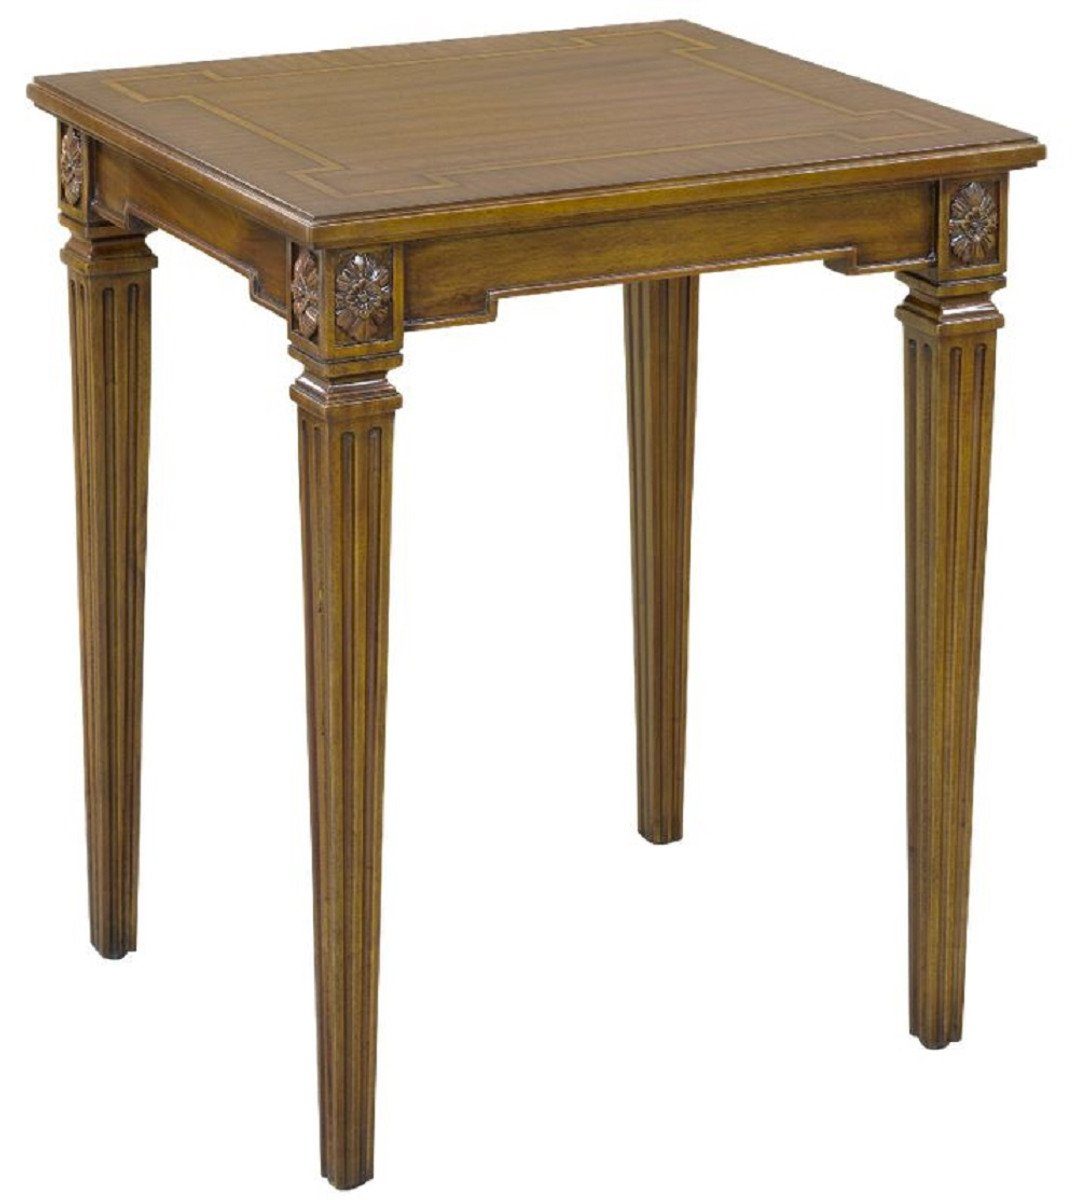 Casa Padrino Beistelltisch Luxus Barock Beistelltisch Braun 48 x 44 x H. 62 cm - Edler Mahagoni Tisch im Barockstil - Barock Mahagoni Möbel